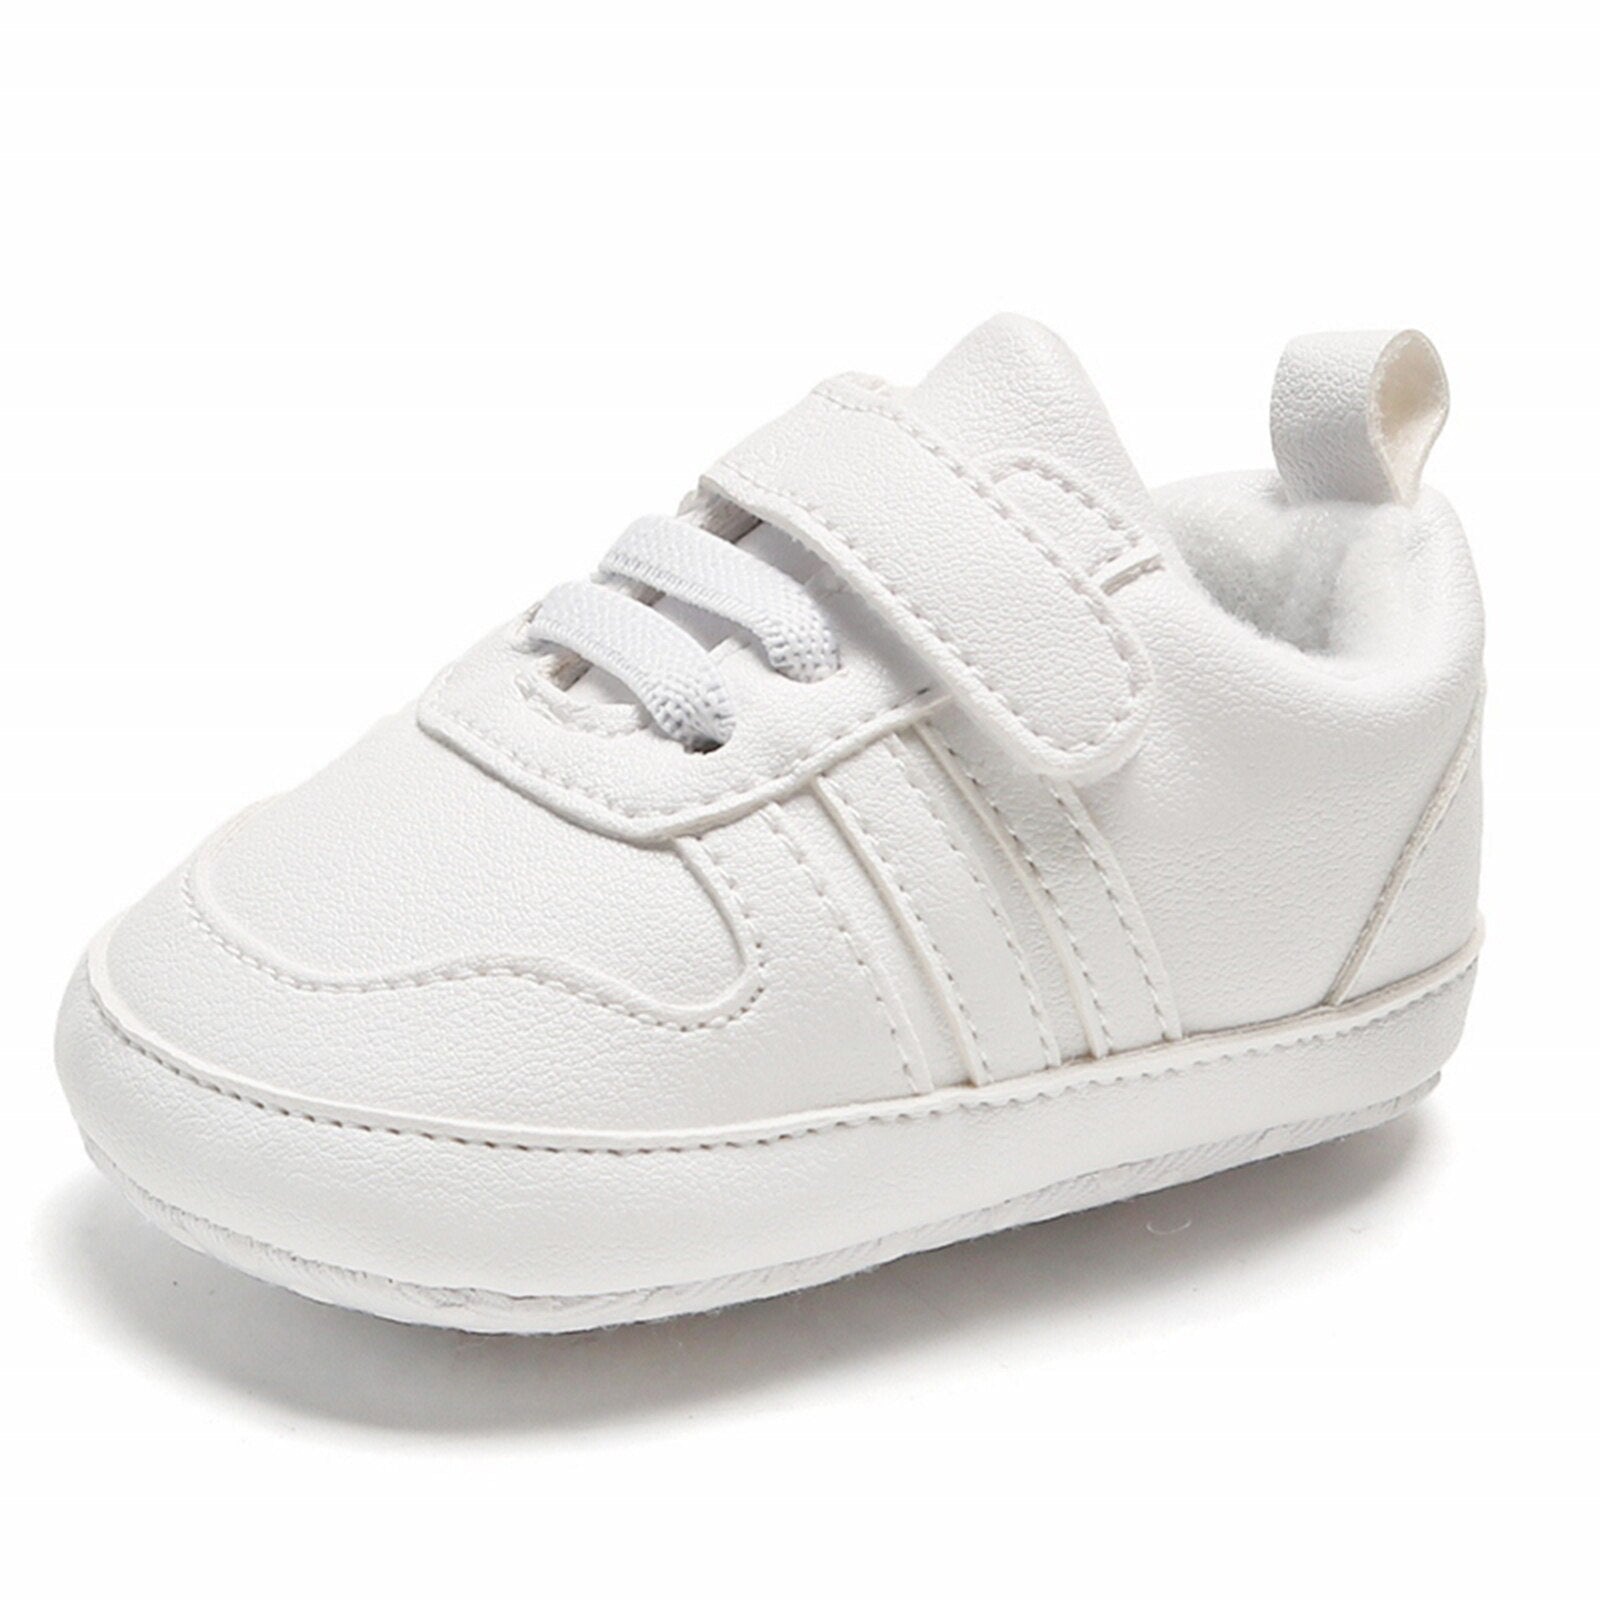 Sapatênis Branco Clássico Sapato Loja Click Certo 